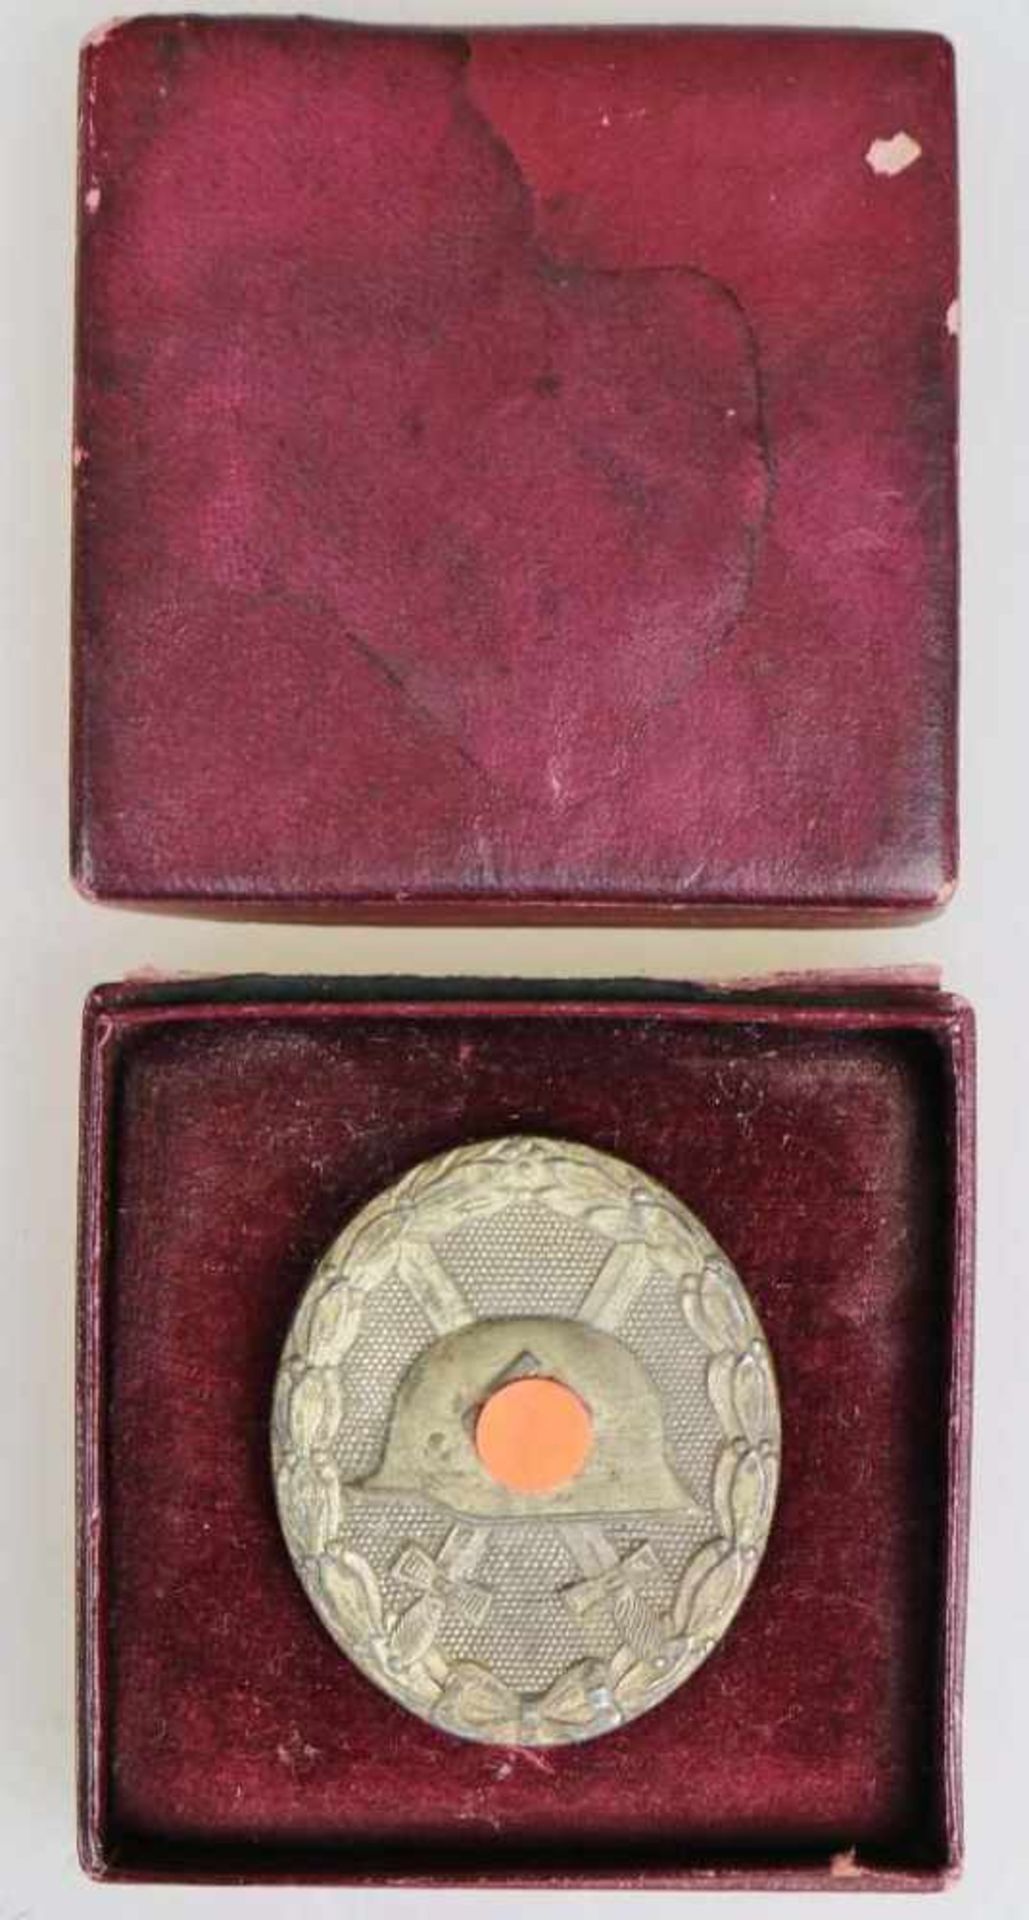 Verwundetenabzeichen 1939 in Silber in roter Pappschachtel. Zink versilbert, rückseitig Hersteller